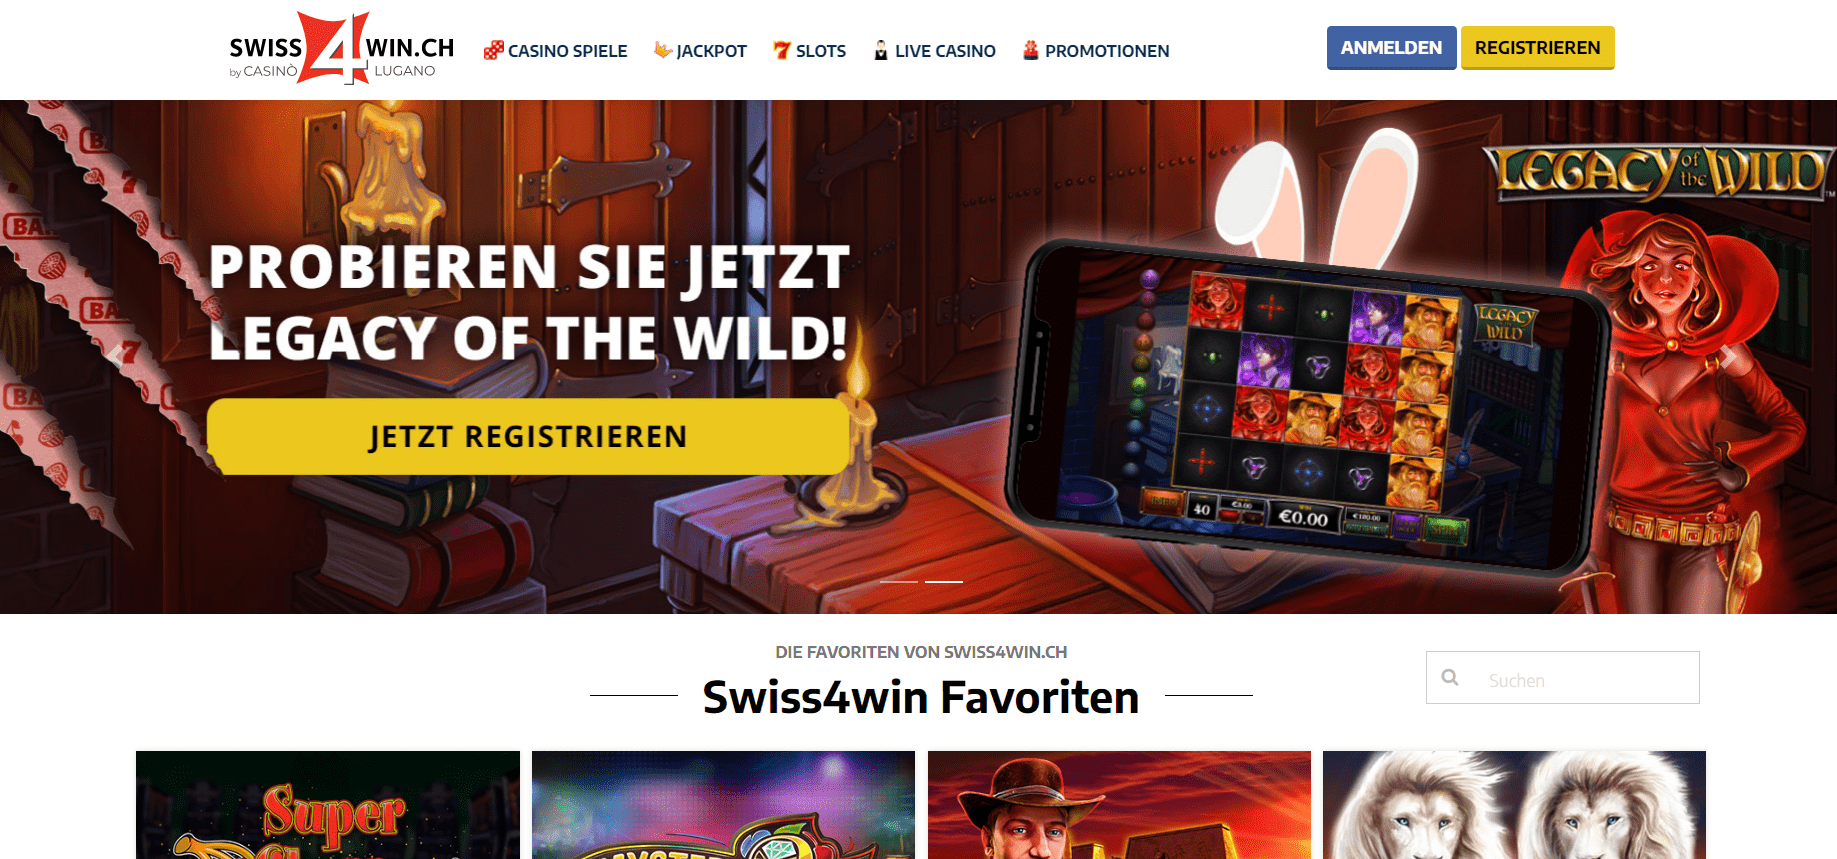 Swiss4win casino